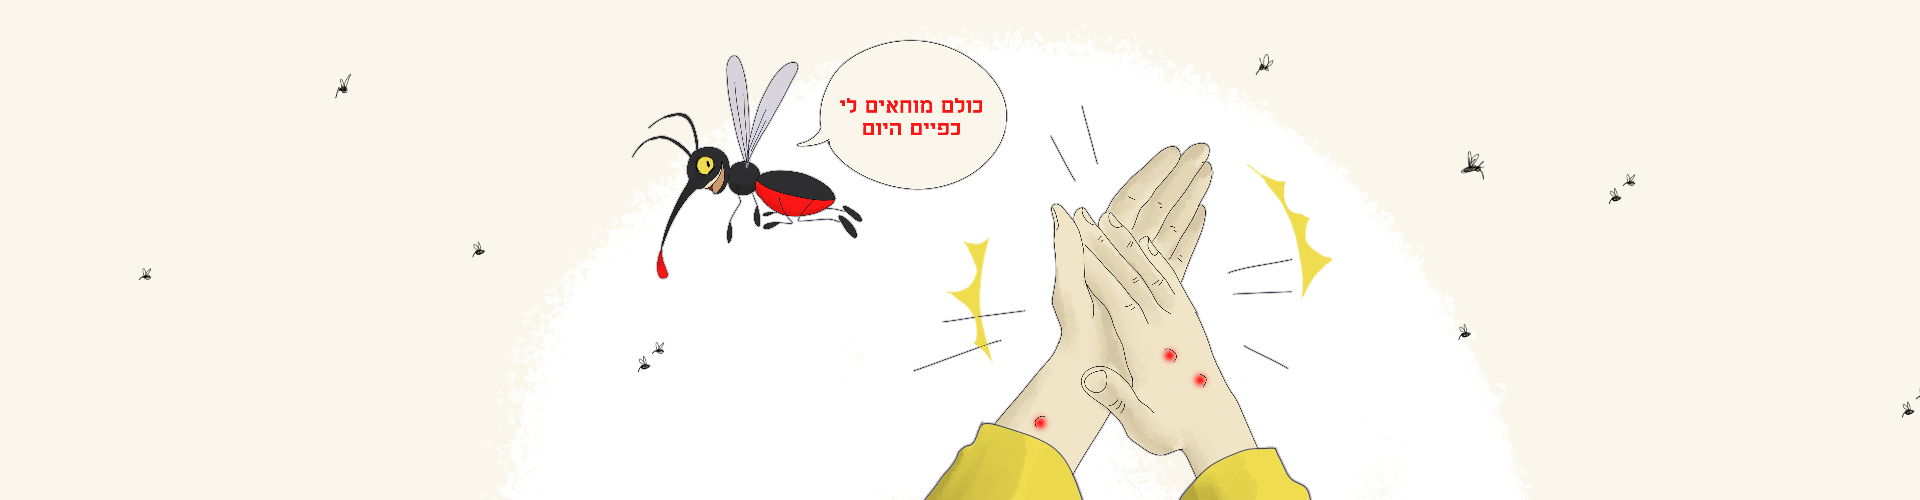 הדברת יתושים בירושלים - יוני הדברות - עושים סוף למזיקים בבית